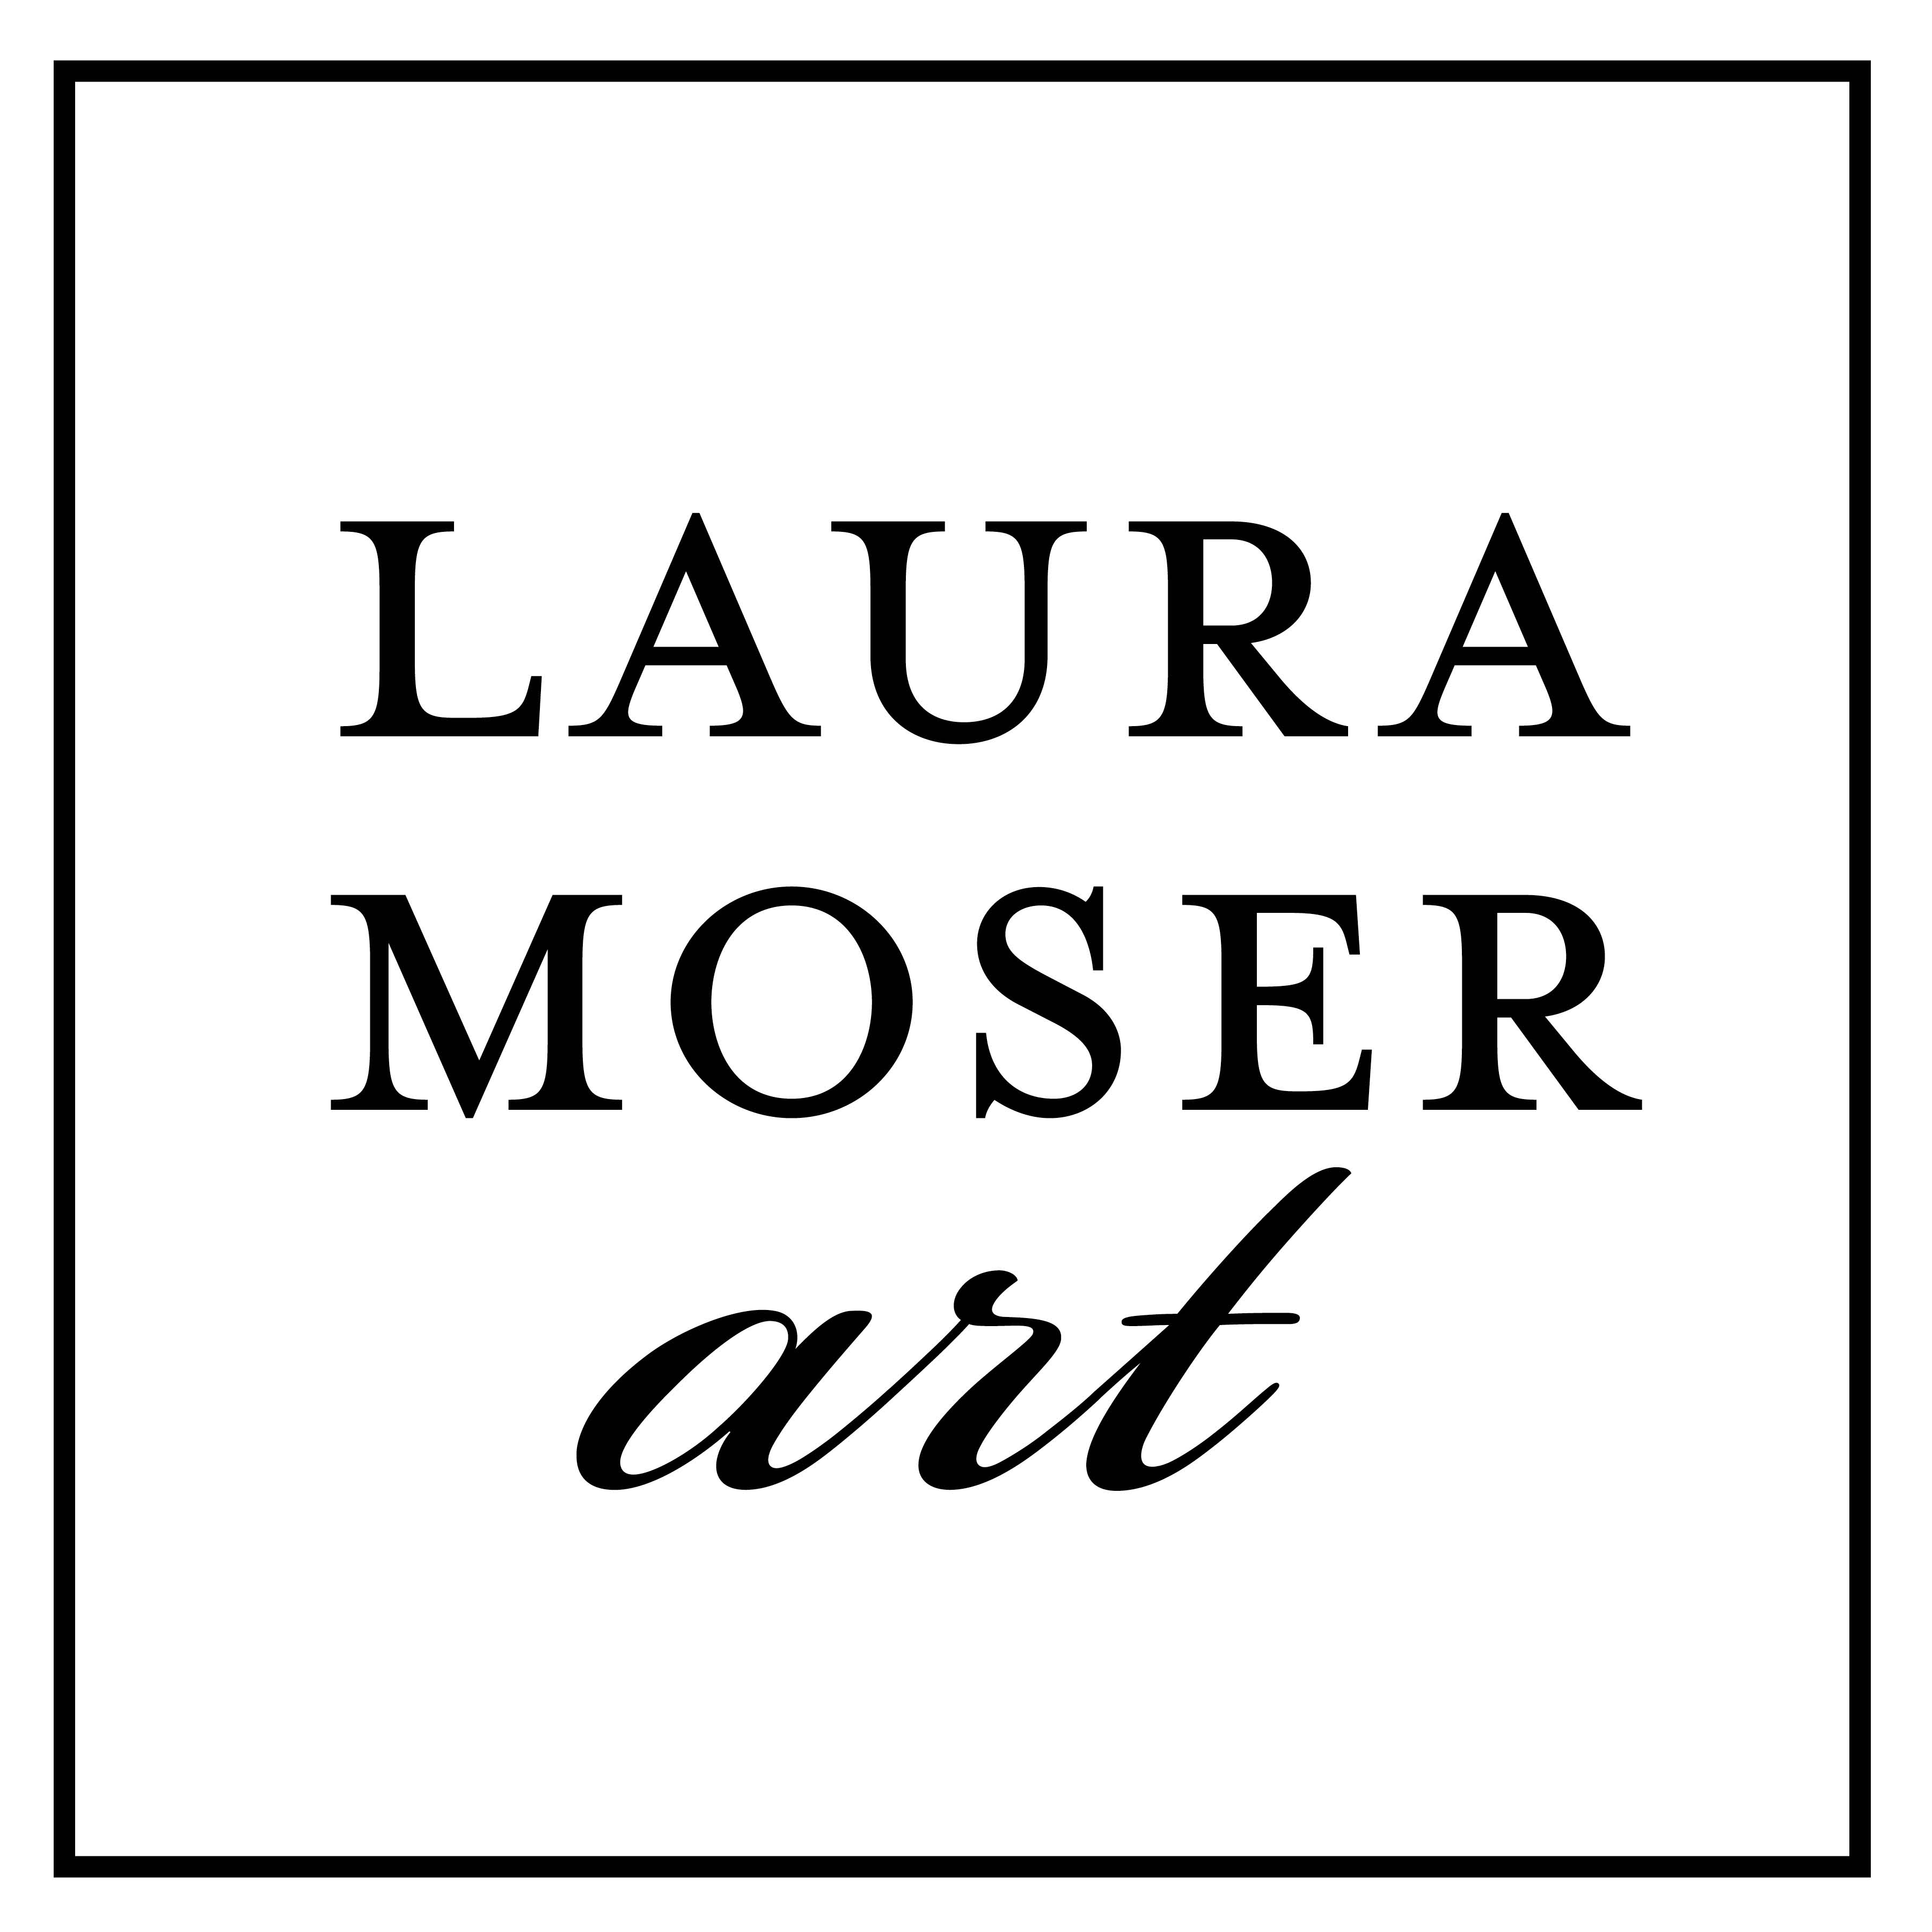 Laura Moser Art - Pin Sponsor $500